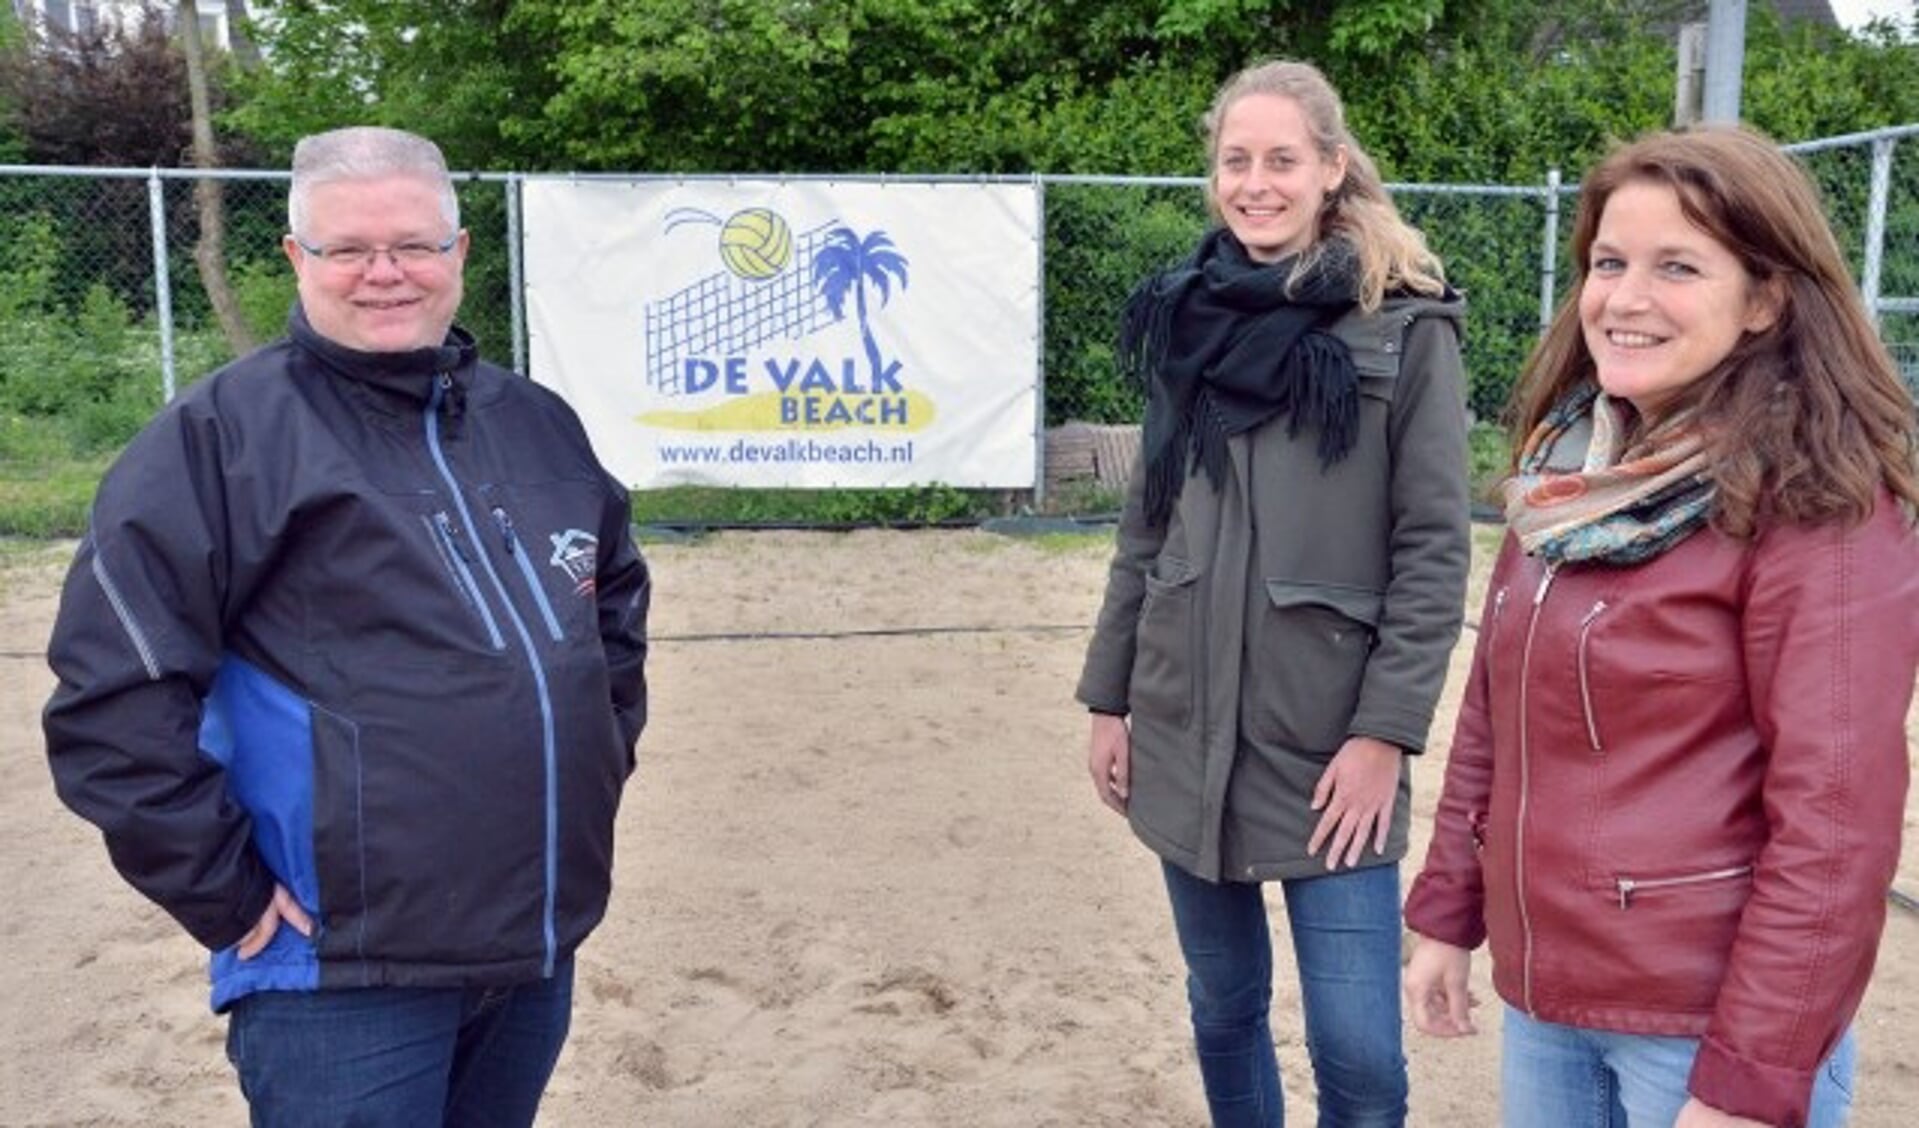 Henny Goergen, Mieke Vlooswijk en Wendy van Kuilenburg van volleybalvereniging De Valk zoeken nieuwe spelers. (Foto: Paul van den Dungen)